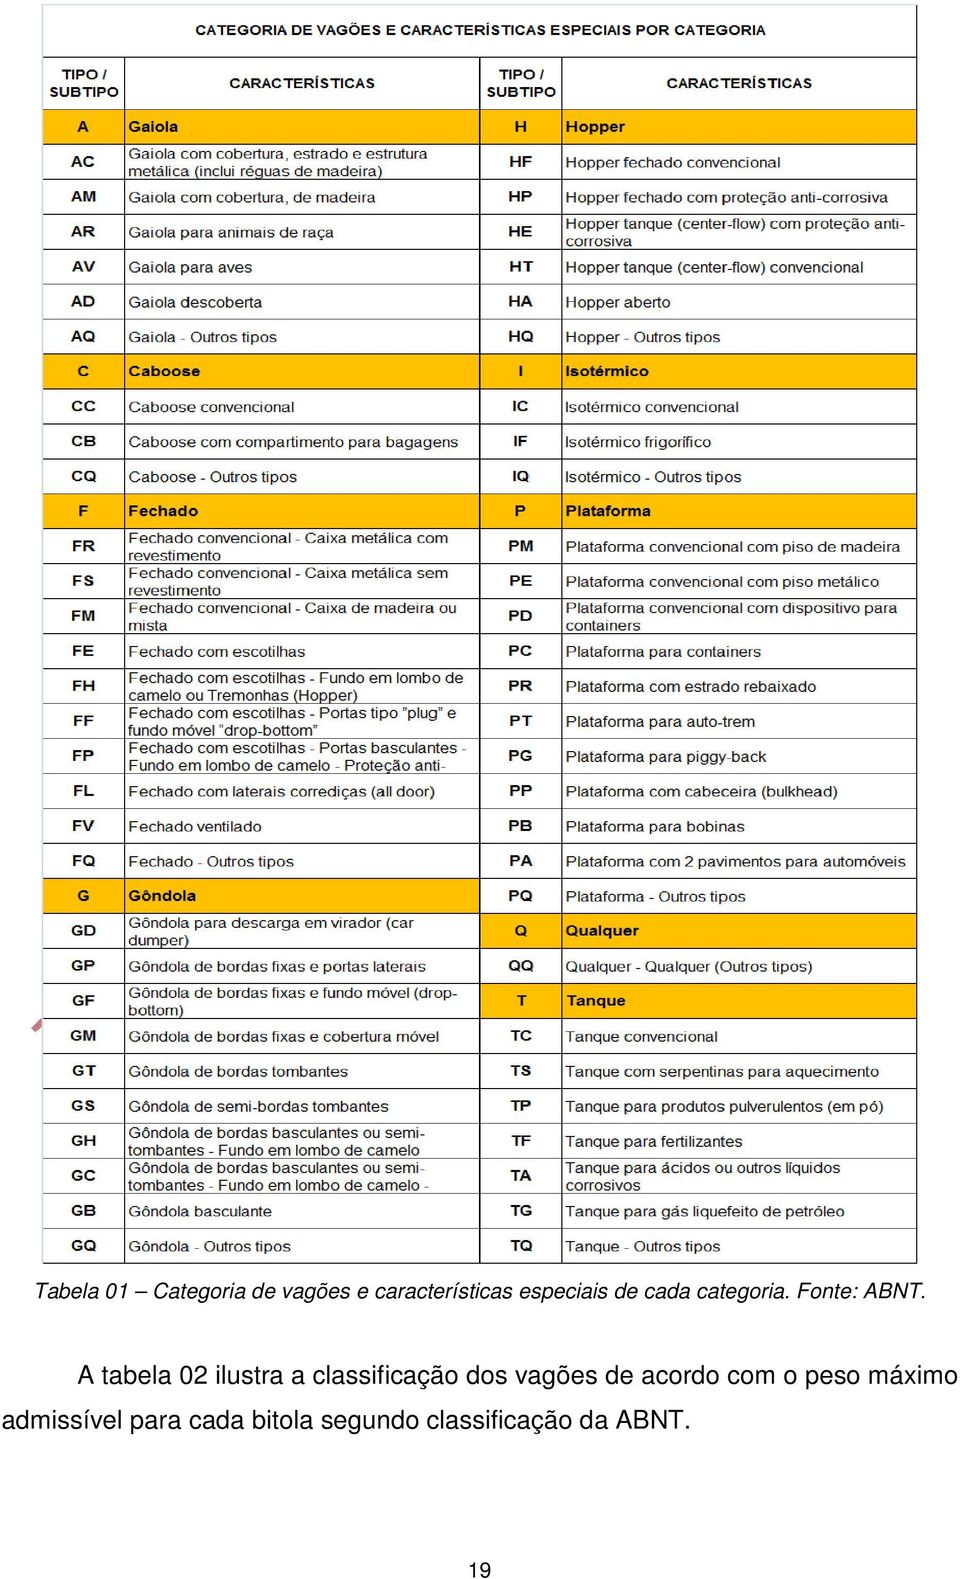 A tabela 02 ilustra a classificação dos vagões de acordo